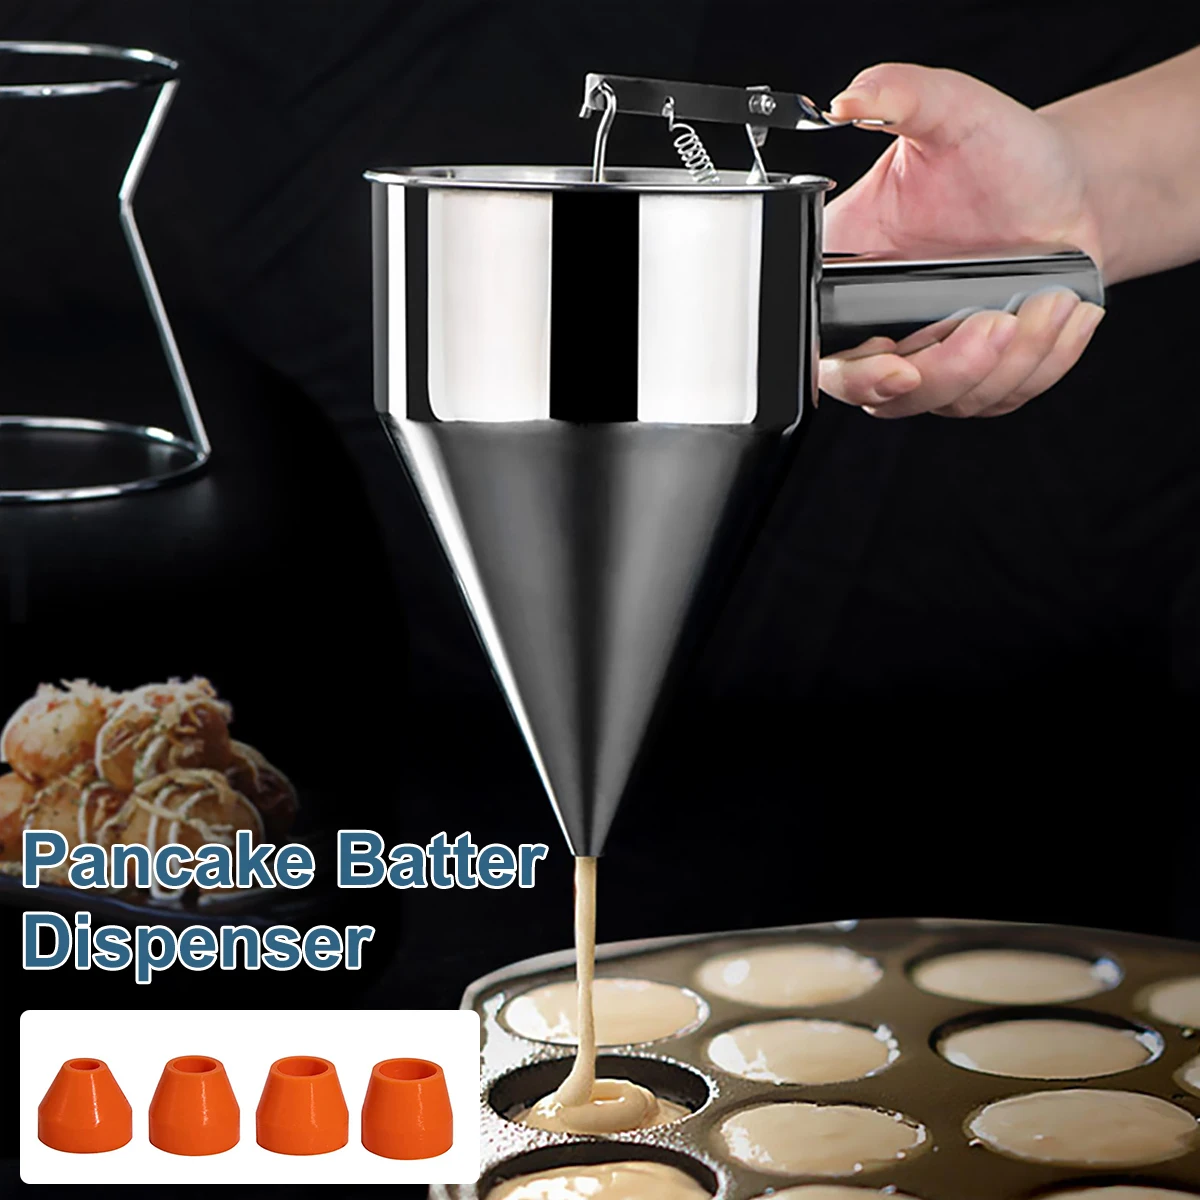 

NEW Pancake Batter Dispenser Funnel Cake Dispenser with Stand Stainless Steel Batter Dispenser Multi-Caliber Baking Tool